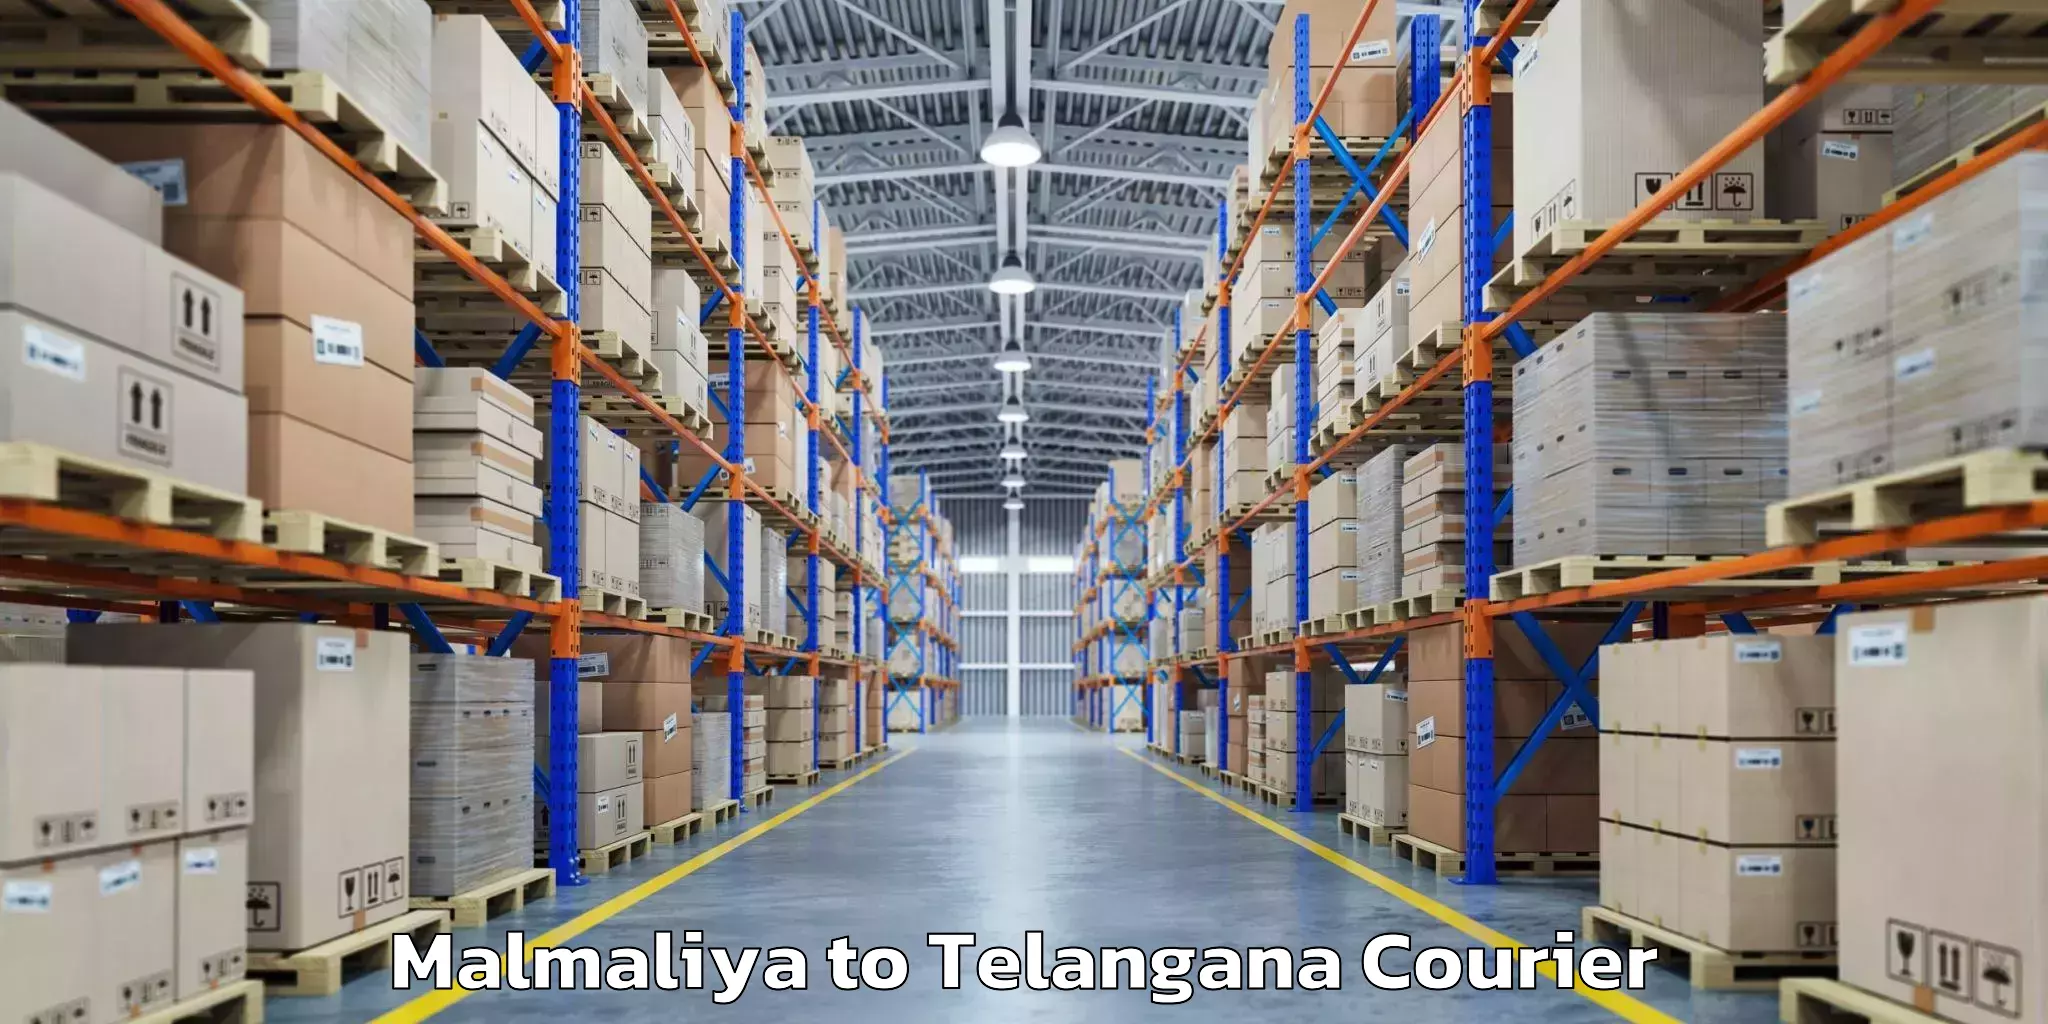 Luggage shipping estimate Malmaliya to Dharmapuri Jagtial